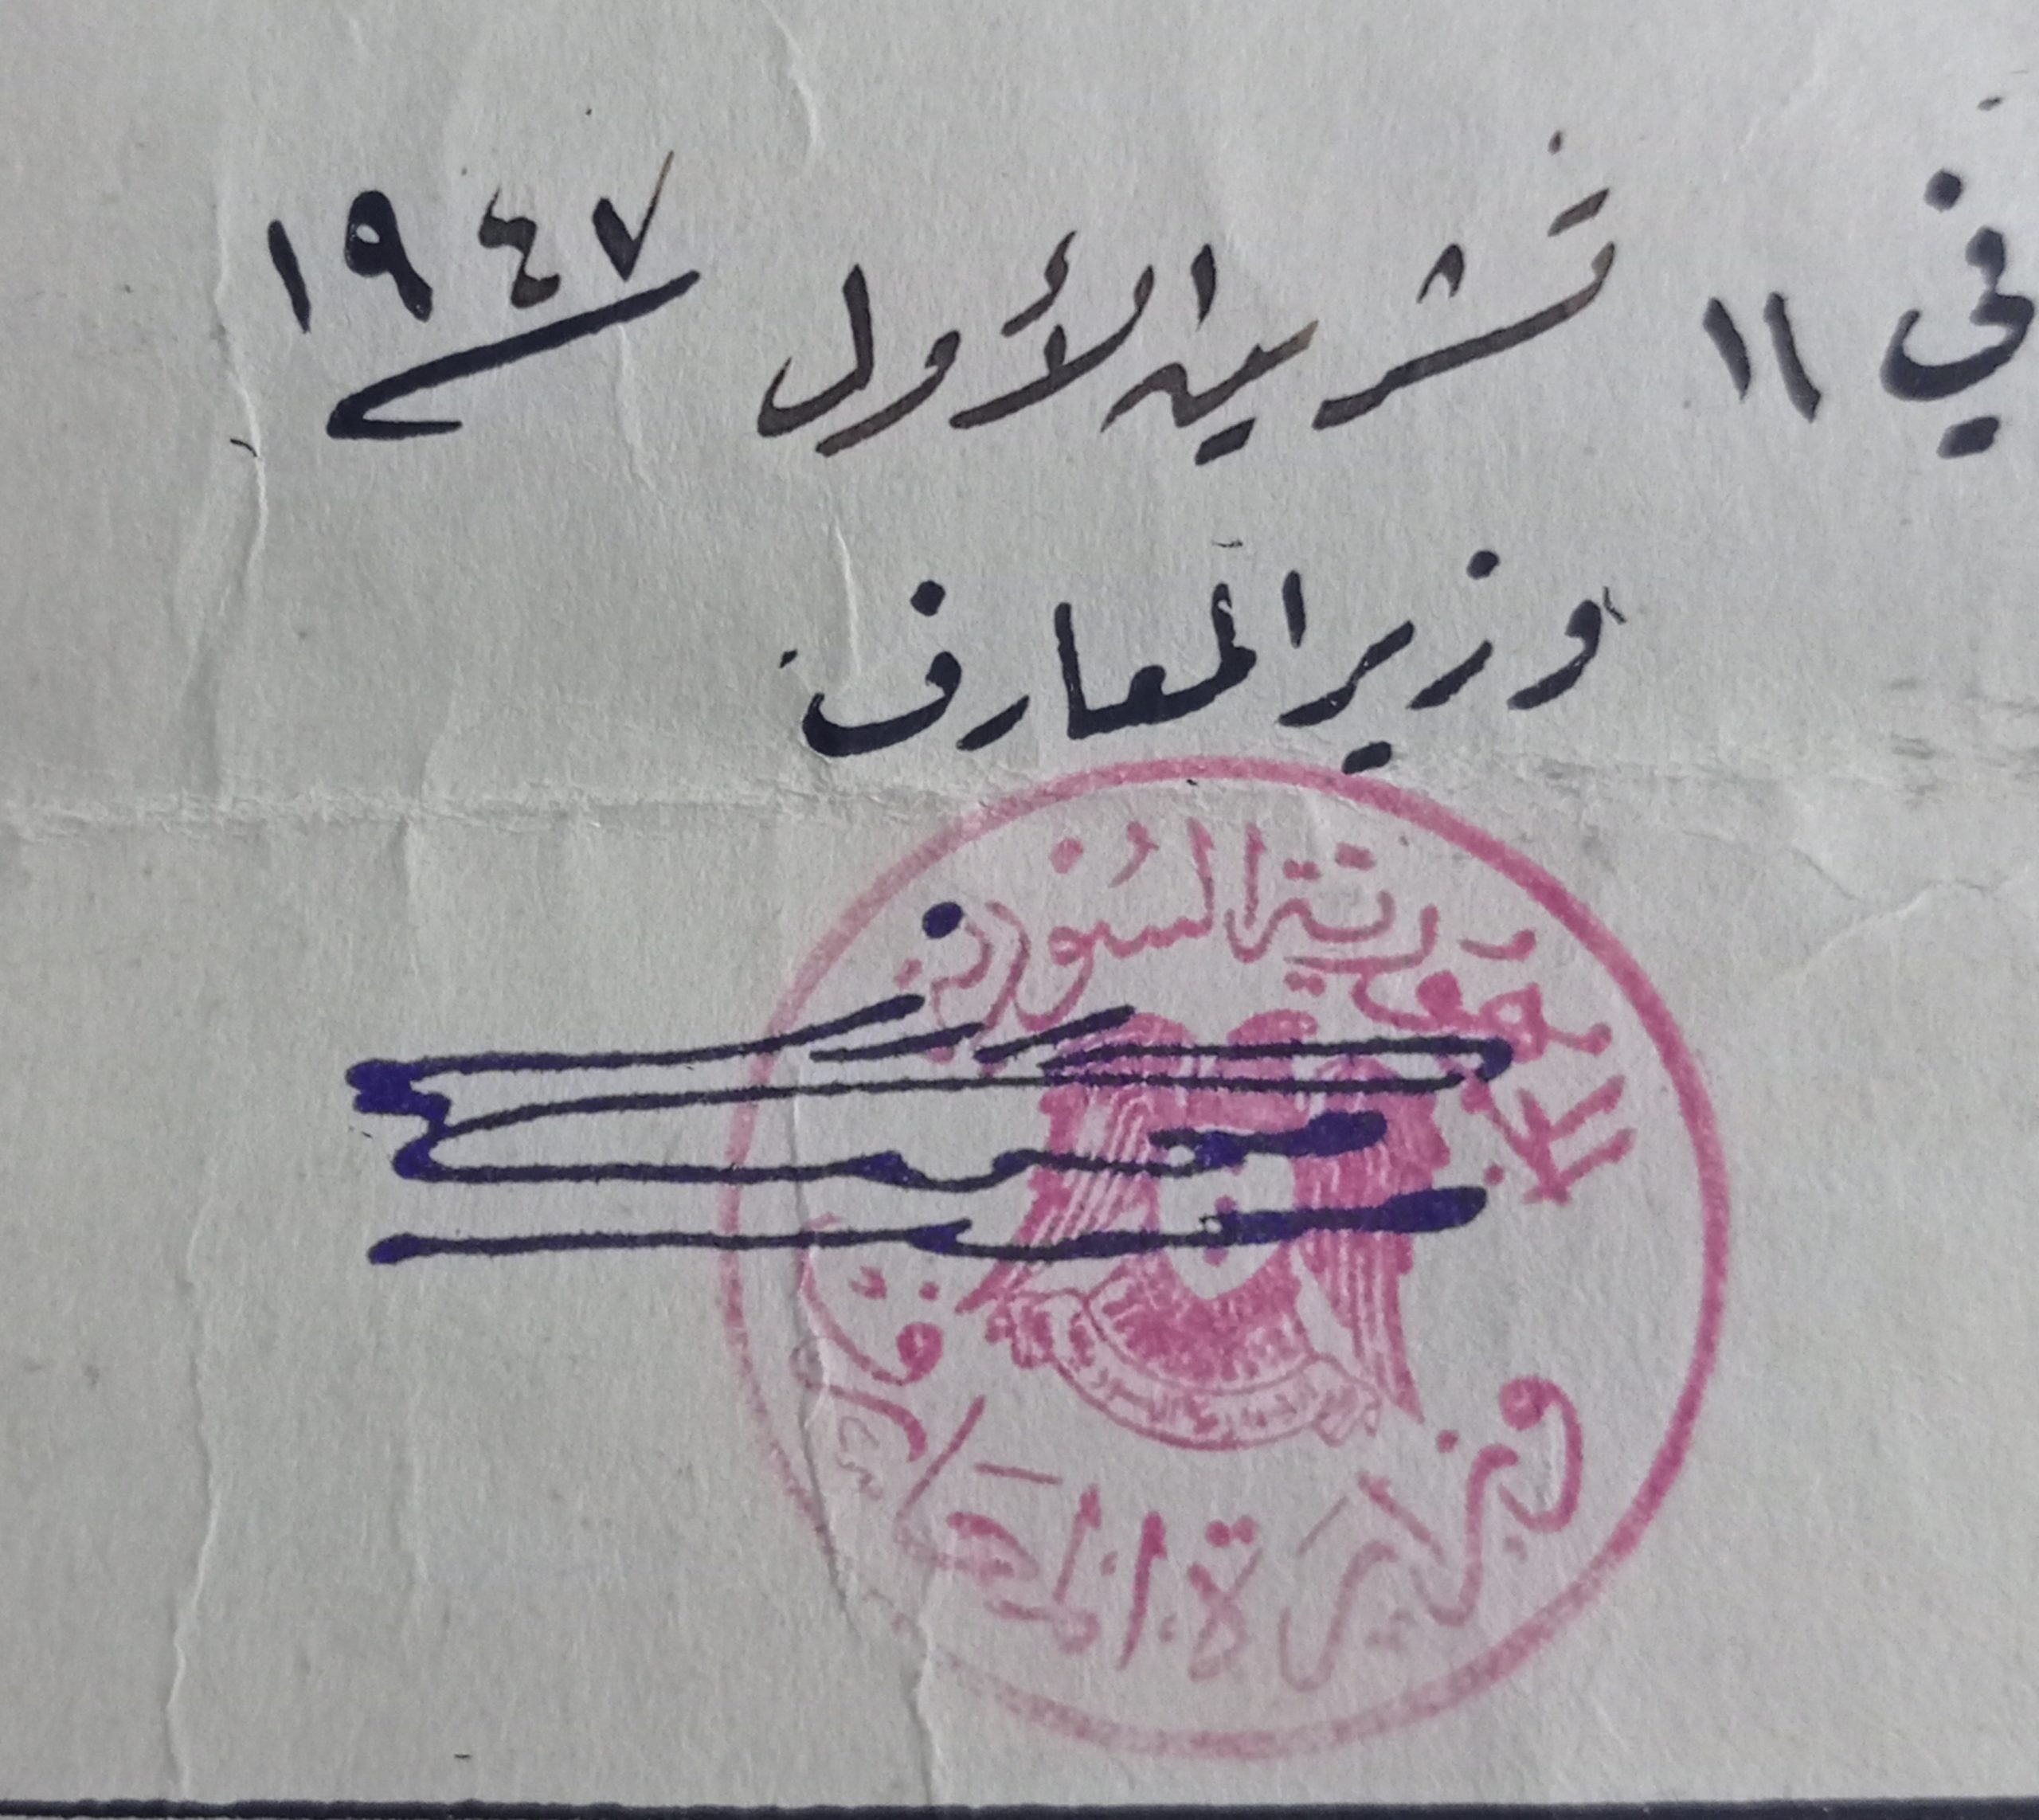 التاريخ السوري المعاصر - توقيع منير العجلاني وزير المعارف في سورية عام 1947